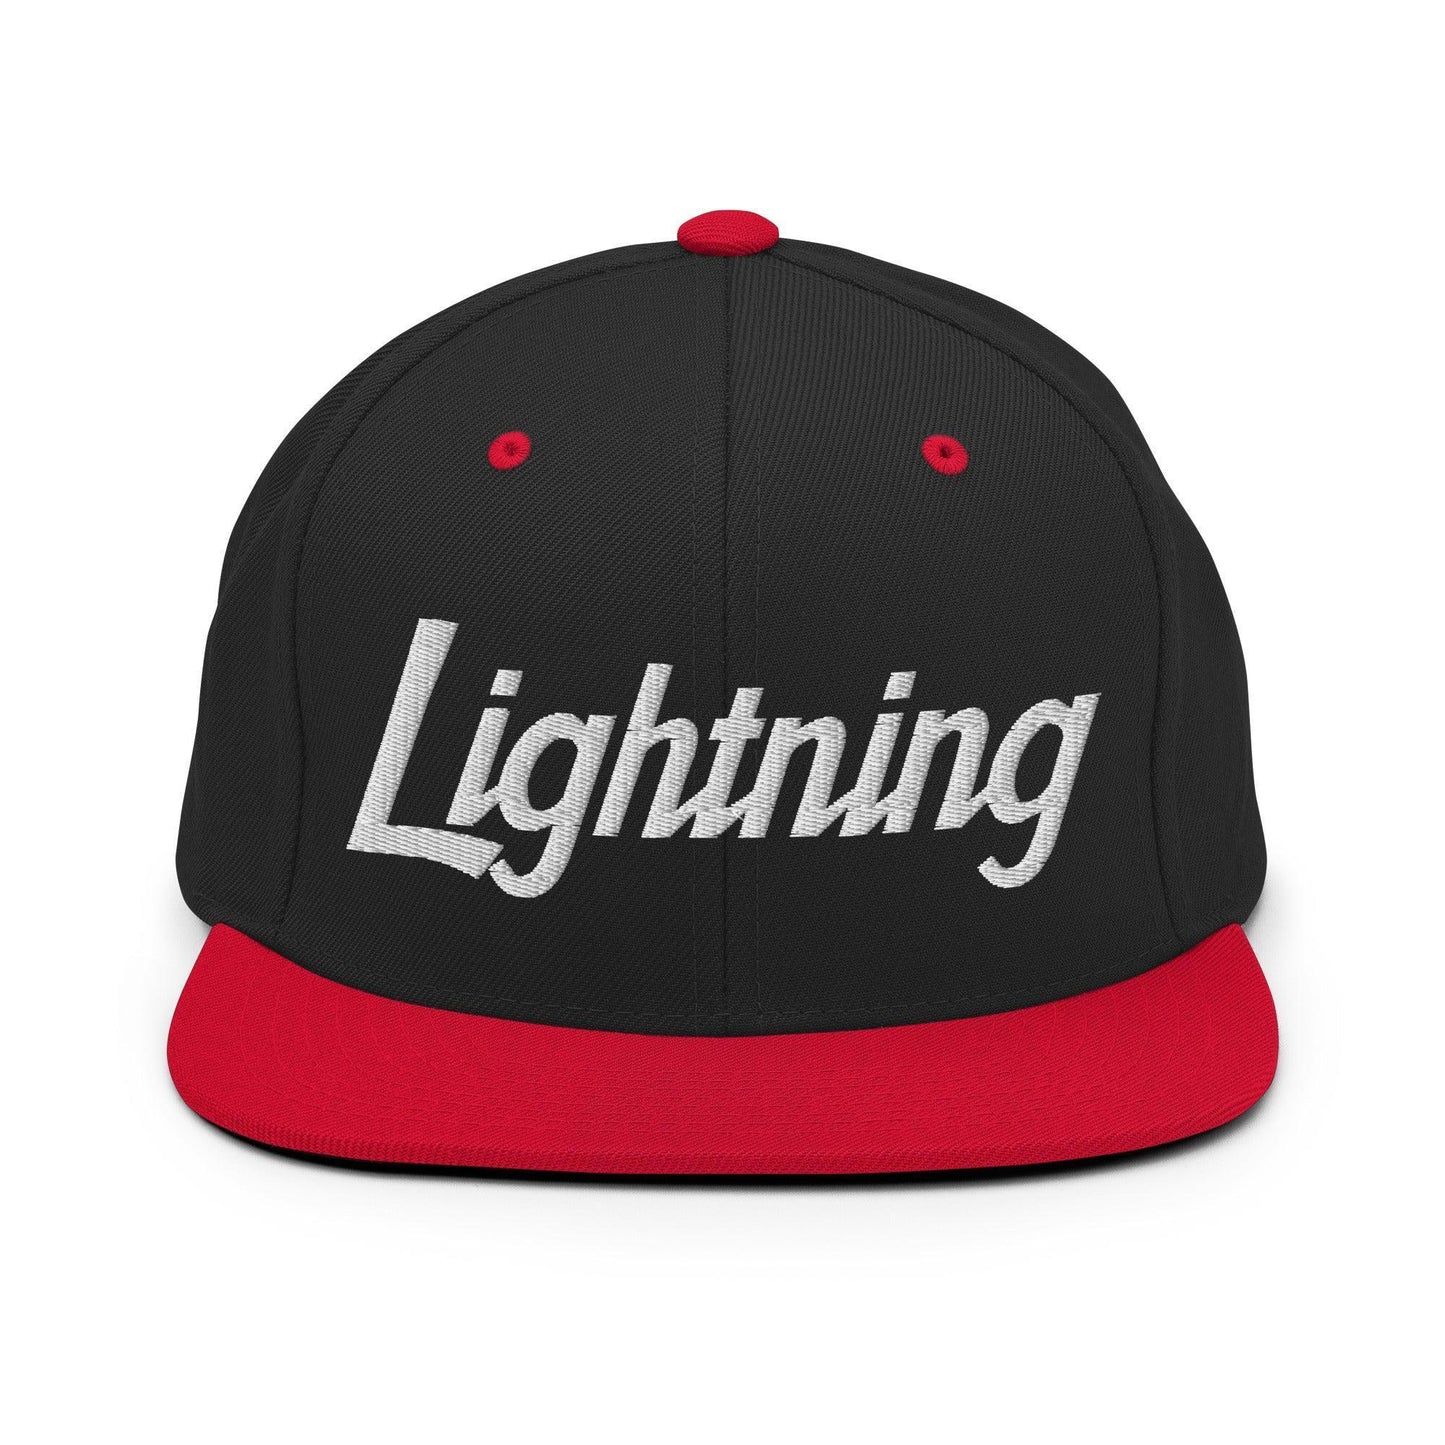 Lightning School Mascot Script Snapback Hat Black/ Red